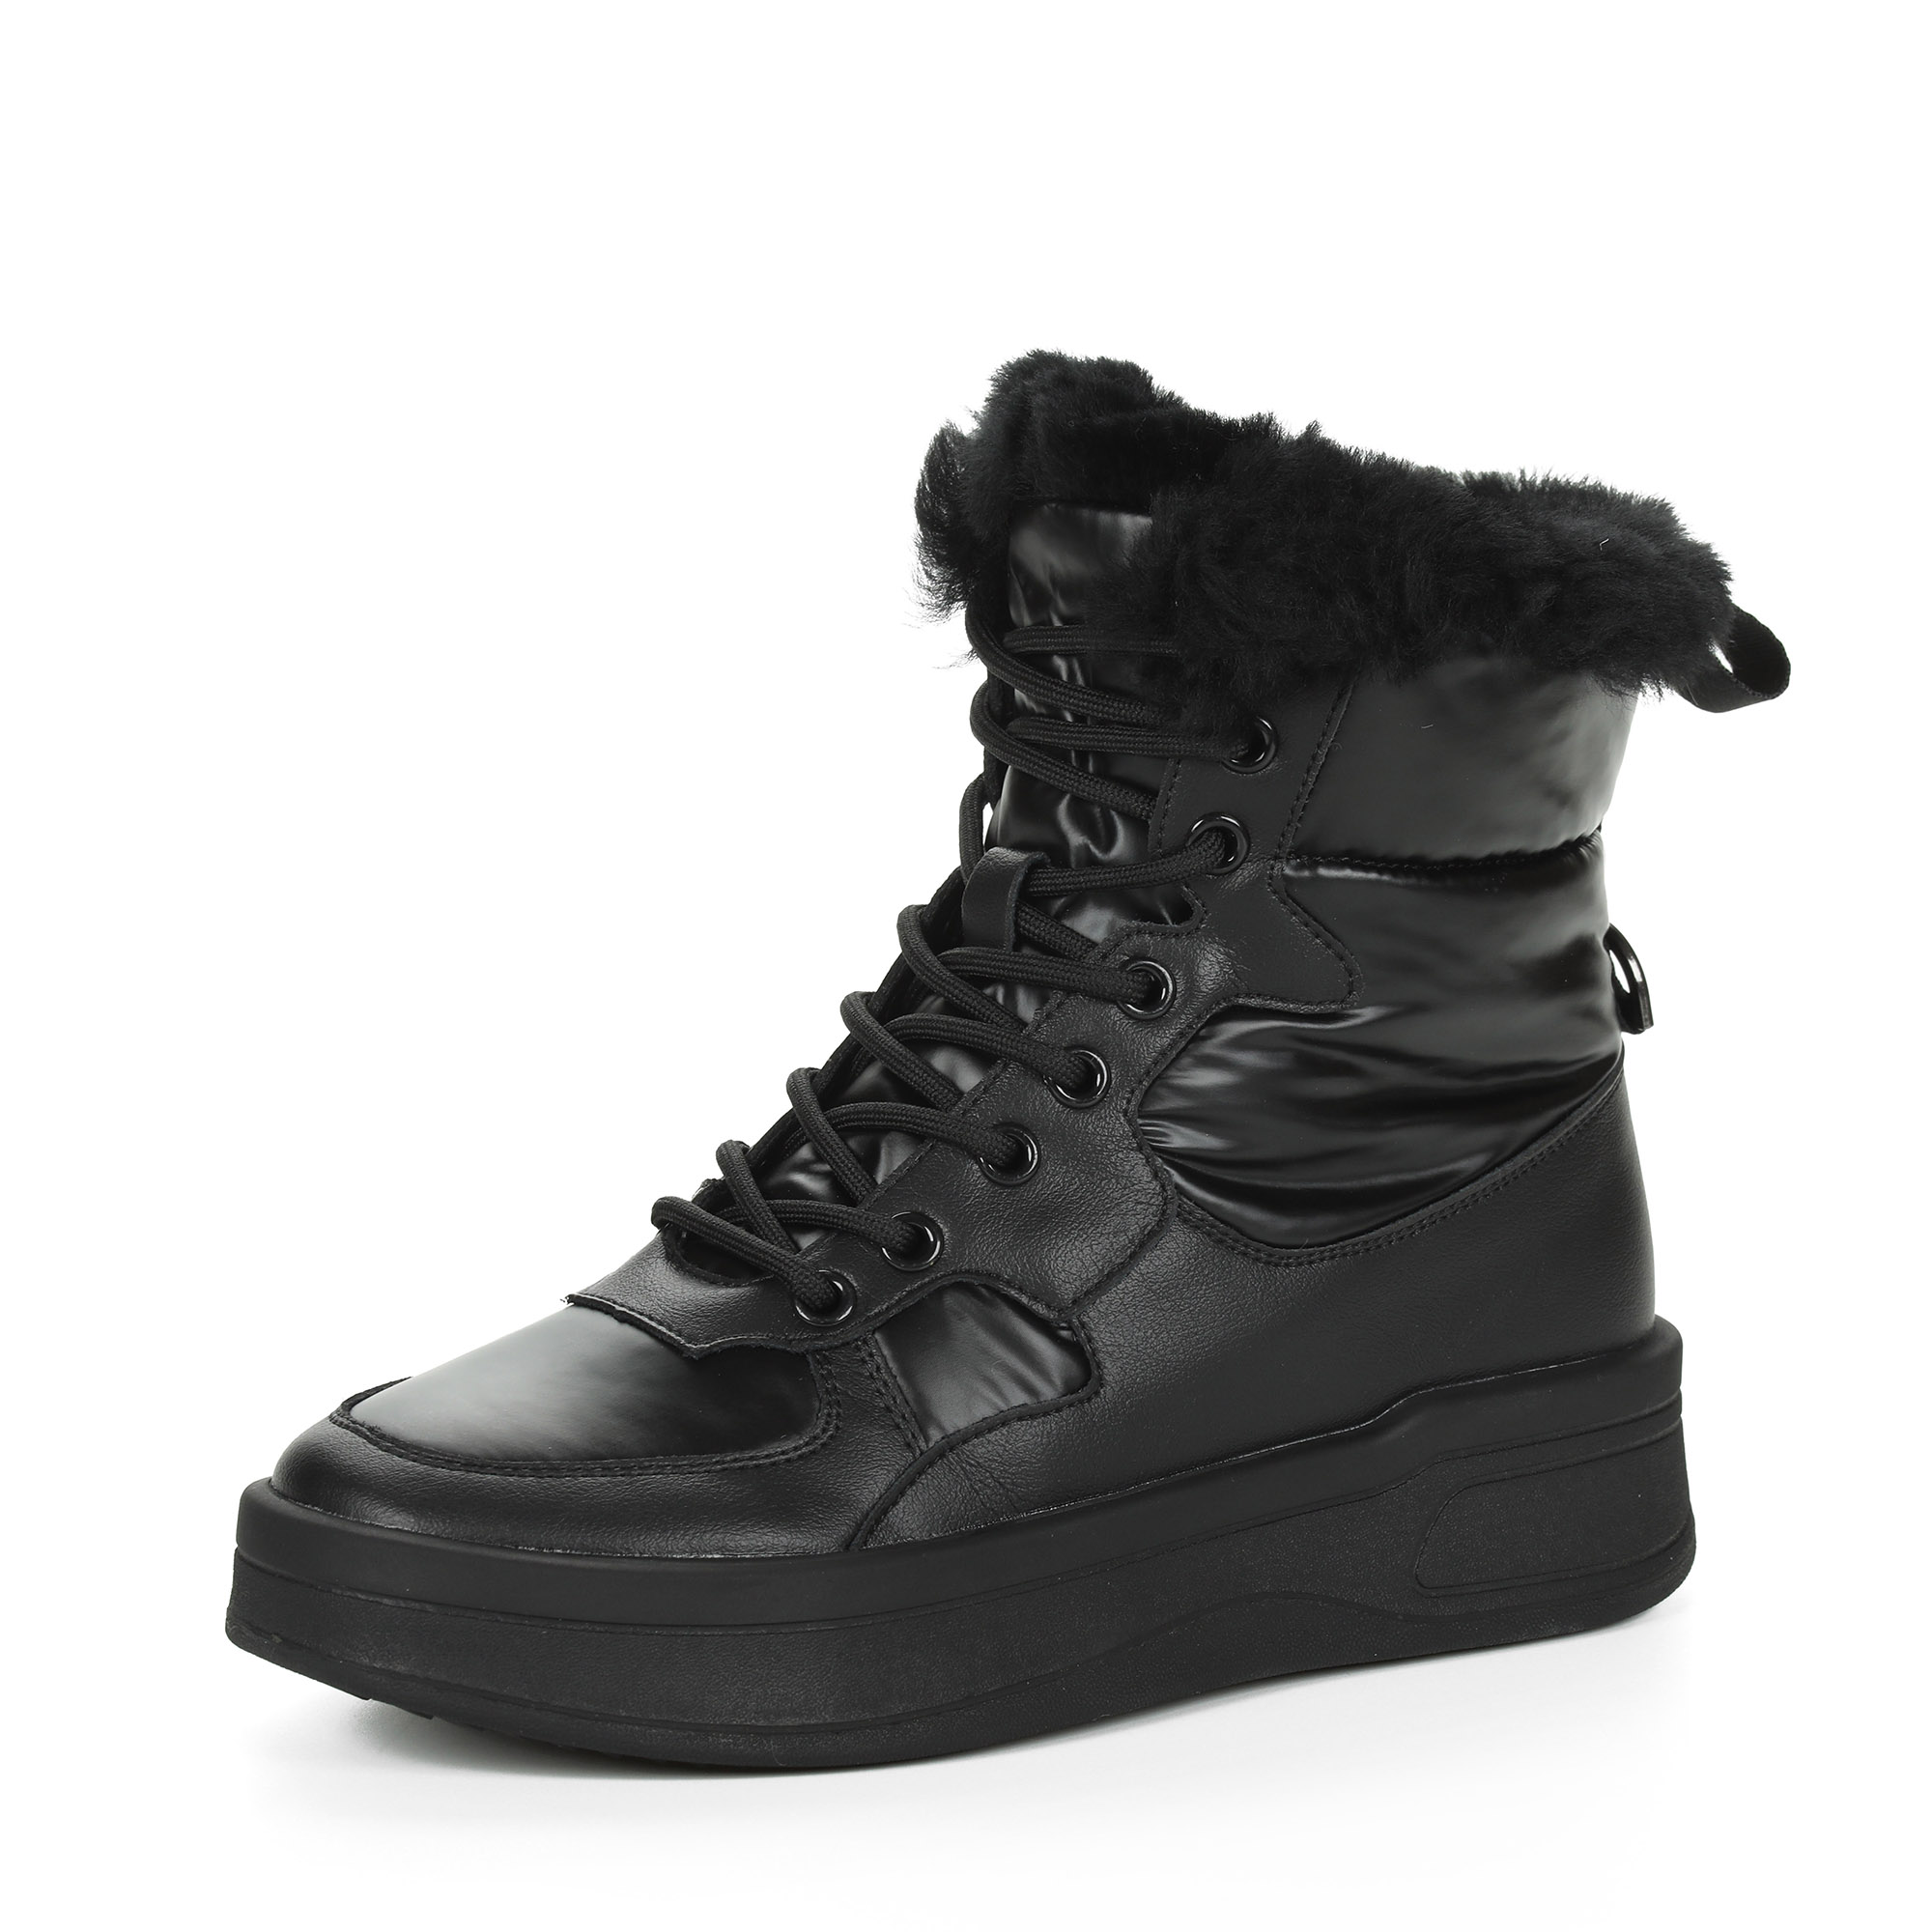 Черные высокие кроссовки из комбинированных материалов смеховой опушкой на подкладке из натуральной шерсти на утолщенной платформе Respect, размер 38, цвет черный - фото 3